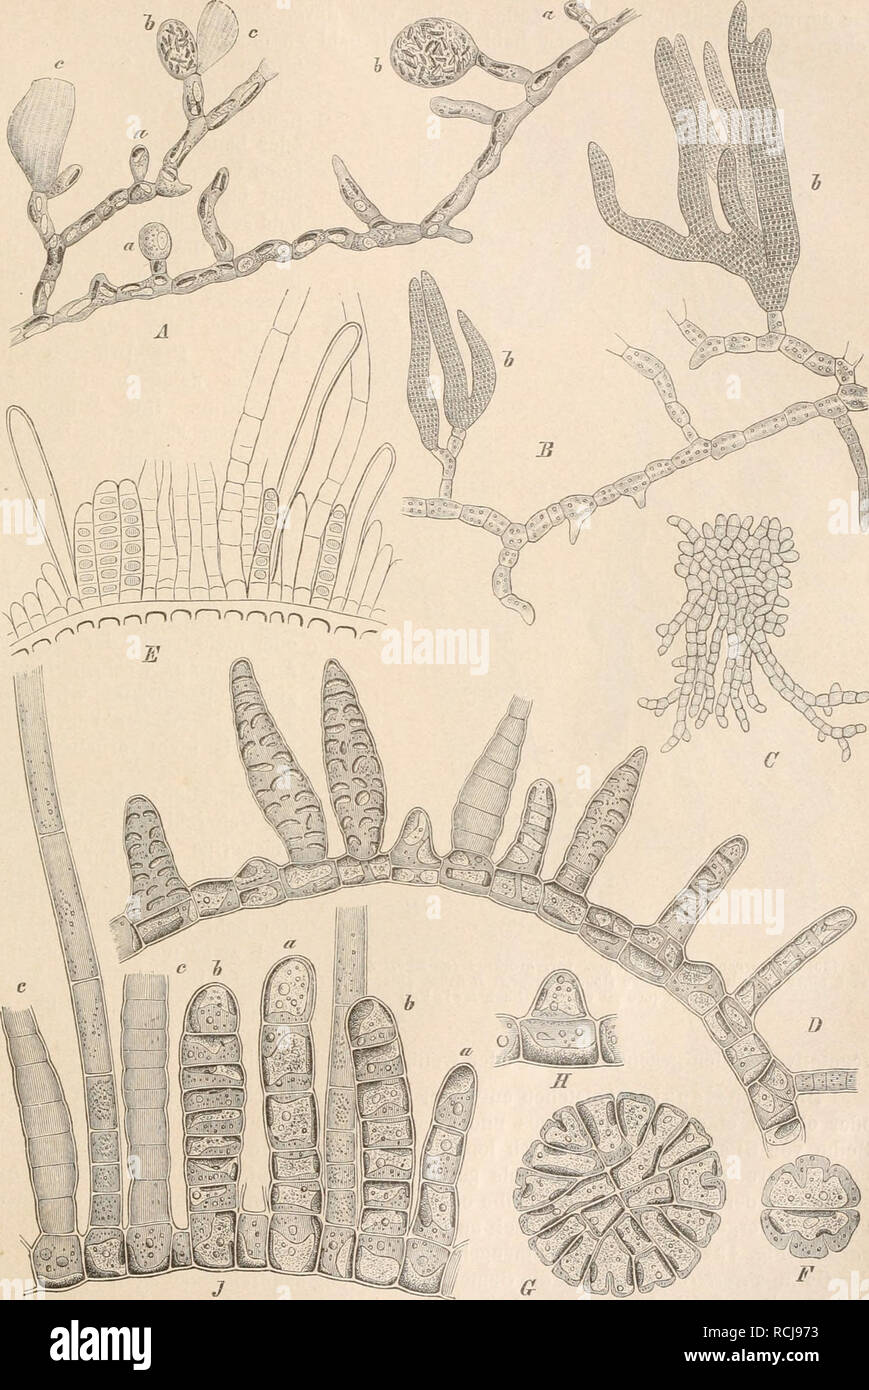 . Die Natürlichen Pflanzenfamilien nebst ihren Gattungen und wichtigeren Arten, insbesondere den Nutzpflanzen, unter Mitwirkung zahlreicher hervorragender Fachgelehrten begründet. Botany. Ectocarpaceae. (Kjellman.) 183. Fig. 129. A Streblonema sphaericum (Derh.., Sol.) Thur., ludividuum mit Sporangien-, a ganz junge, 6 ältere, c ent- leerte Sporangien (ca. 300mal vergr.). — B Str. fascicidatum Tliur. Stück einer Pfl. mit Gametangien (6) (250mal vergr.). — C, D Ectocarpus repens Rke. C junges, teilweise psendoparenchymatisclies Basallager (ca. ISOmal vergr.); D ein horizontaler Faden mit kurzen Stock Photo